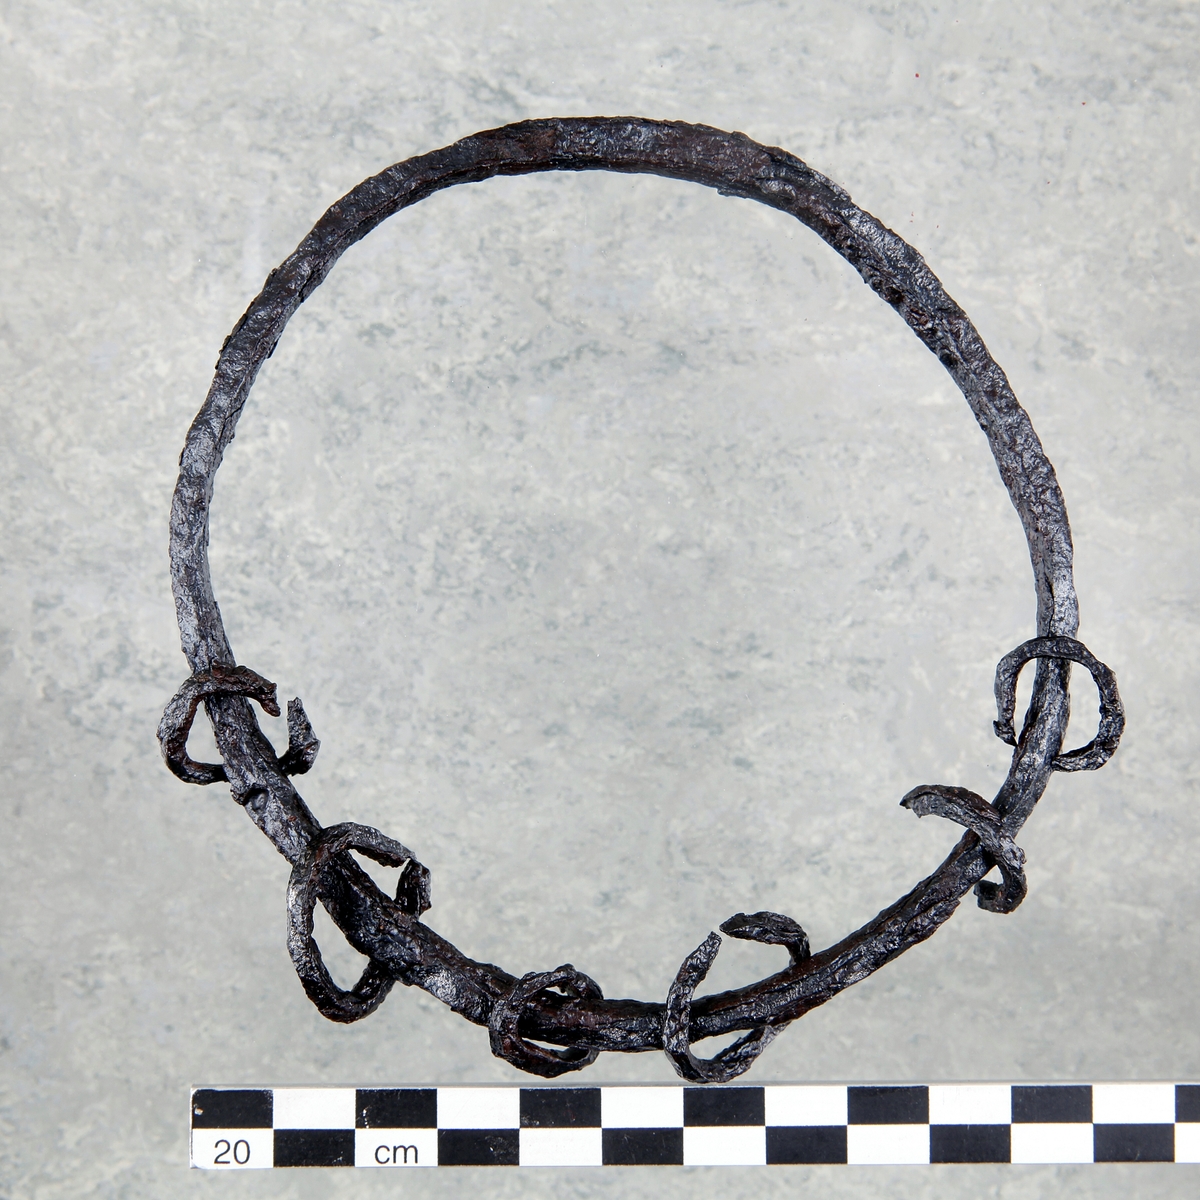 Amulettring av järn. Rund ring med sex mindre ringar på. Vissa ringar ej kompletta. Har ursprungligen varit fler ringar, nu fragmenterade.